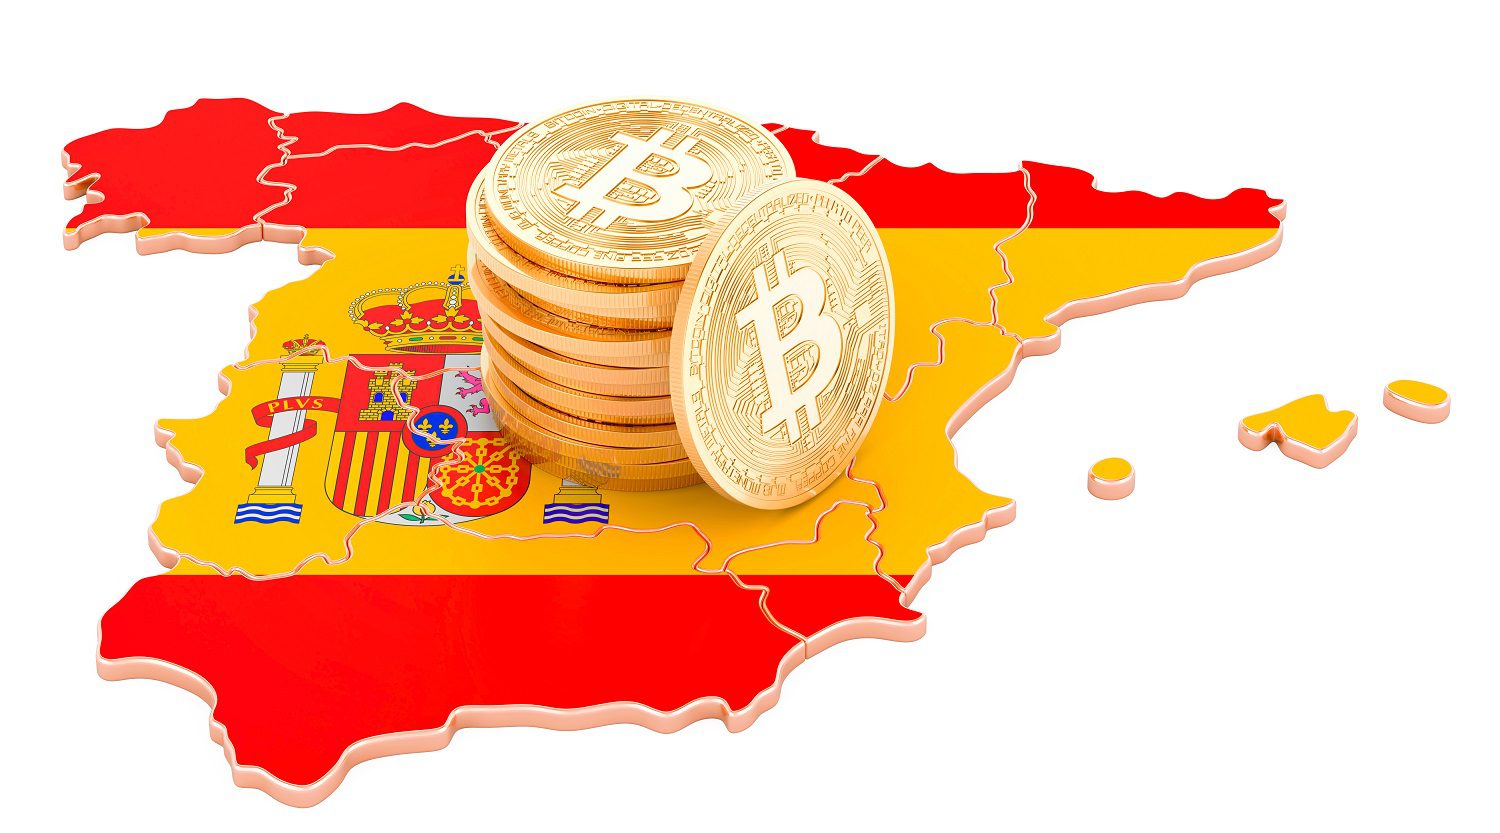 Un mapa 3D de España, decorado con los colores de la bandera nacional española, con una pila de fichas de metal destinadas a representar Bitcoin.